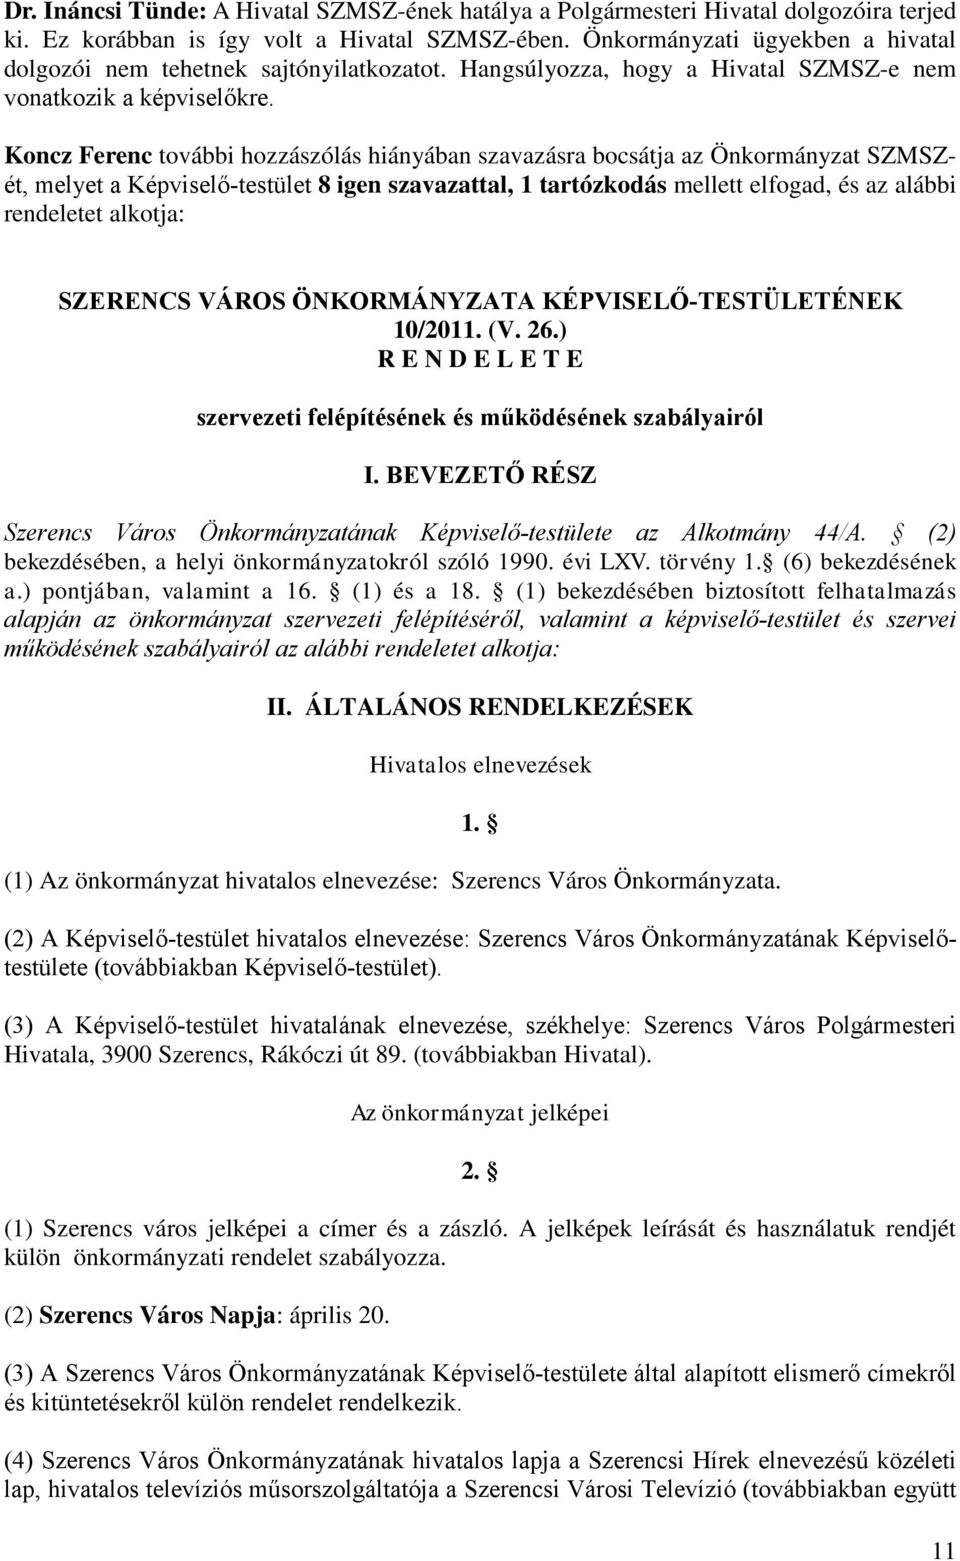 Koncz Ferenc további hozzászólás hiányában szavazásra bocsátja az Önkormányzat SZMSZét, melyet a Képviselő-testület 8 igen szavazattal, 1 tartózkodás mellett elfogad, és az alábbi rendeletet alkotja: